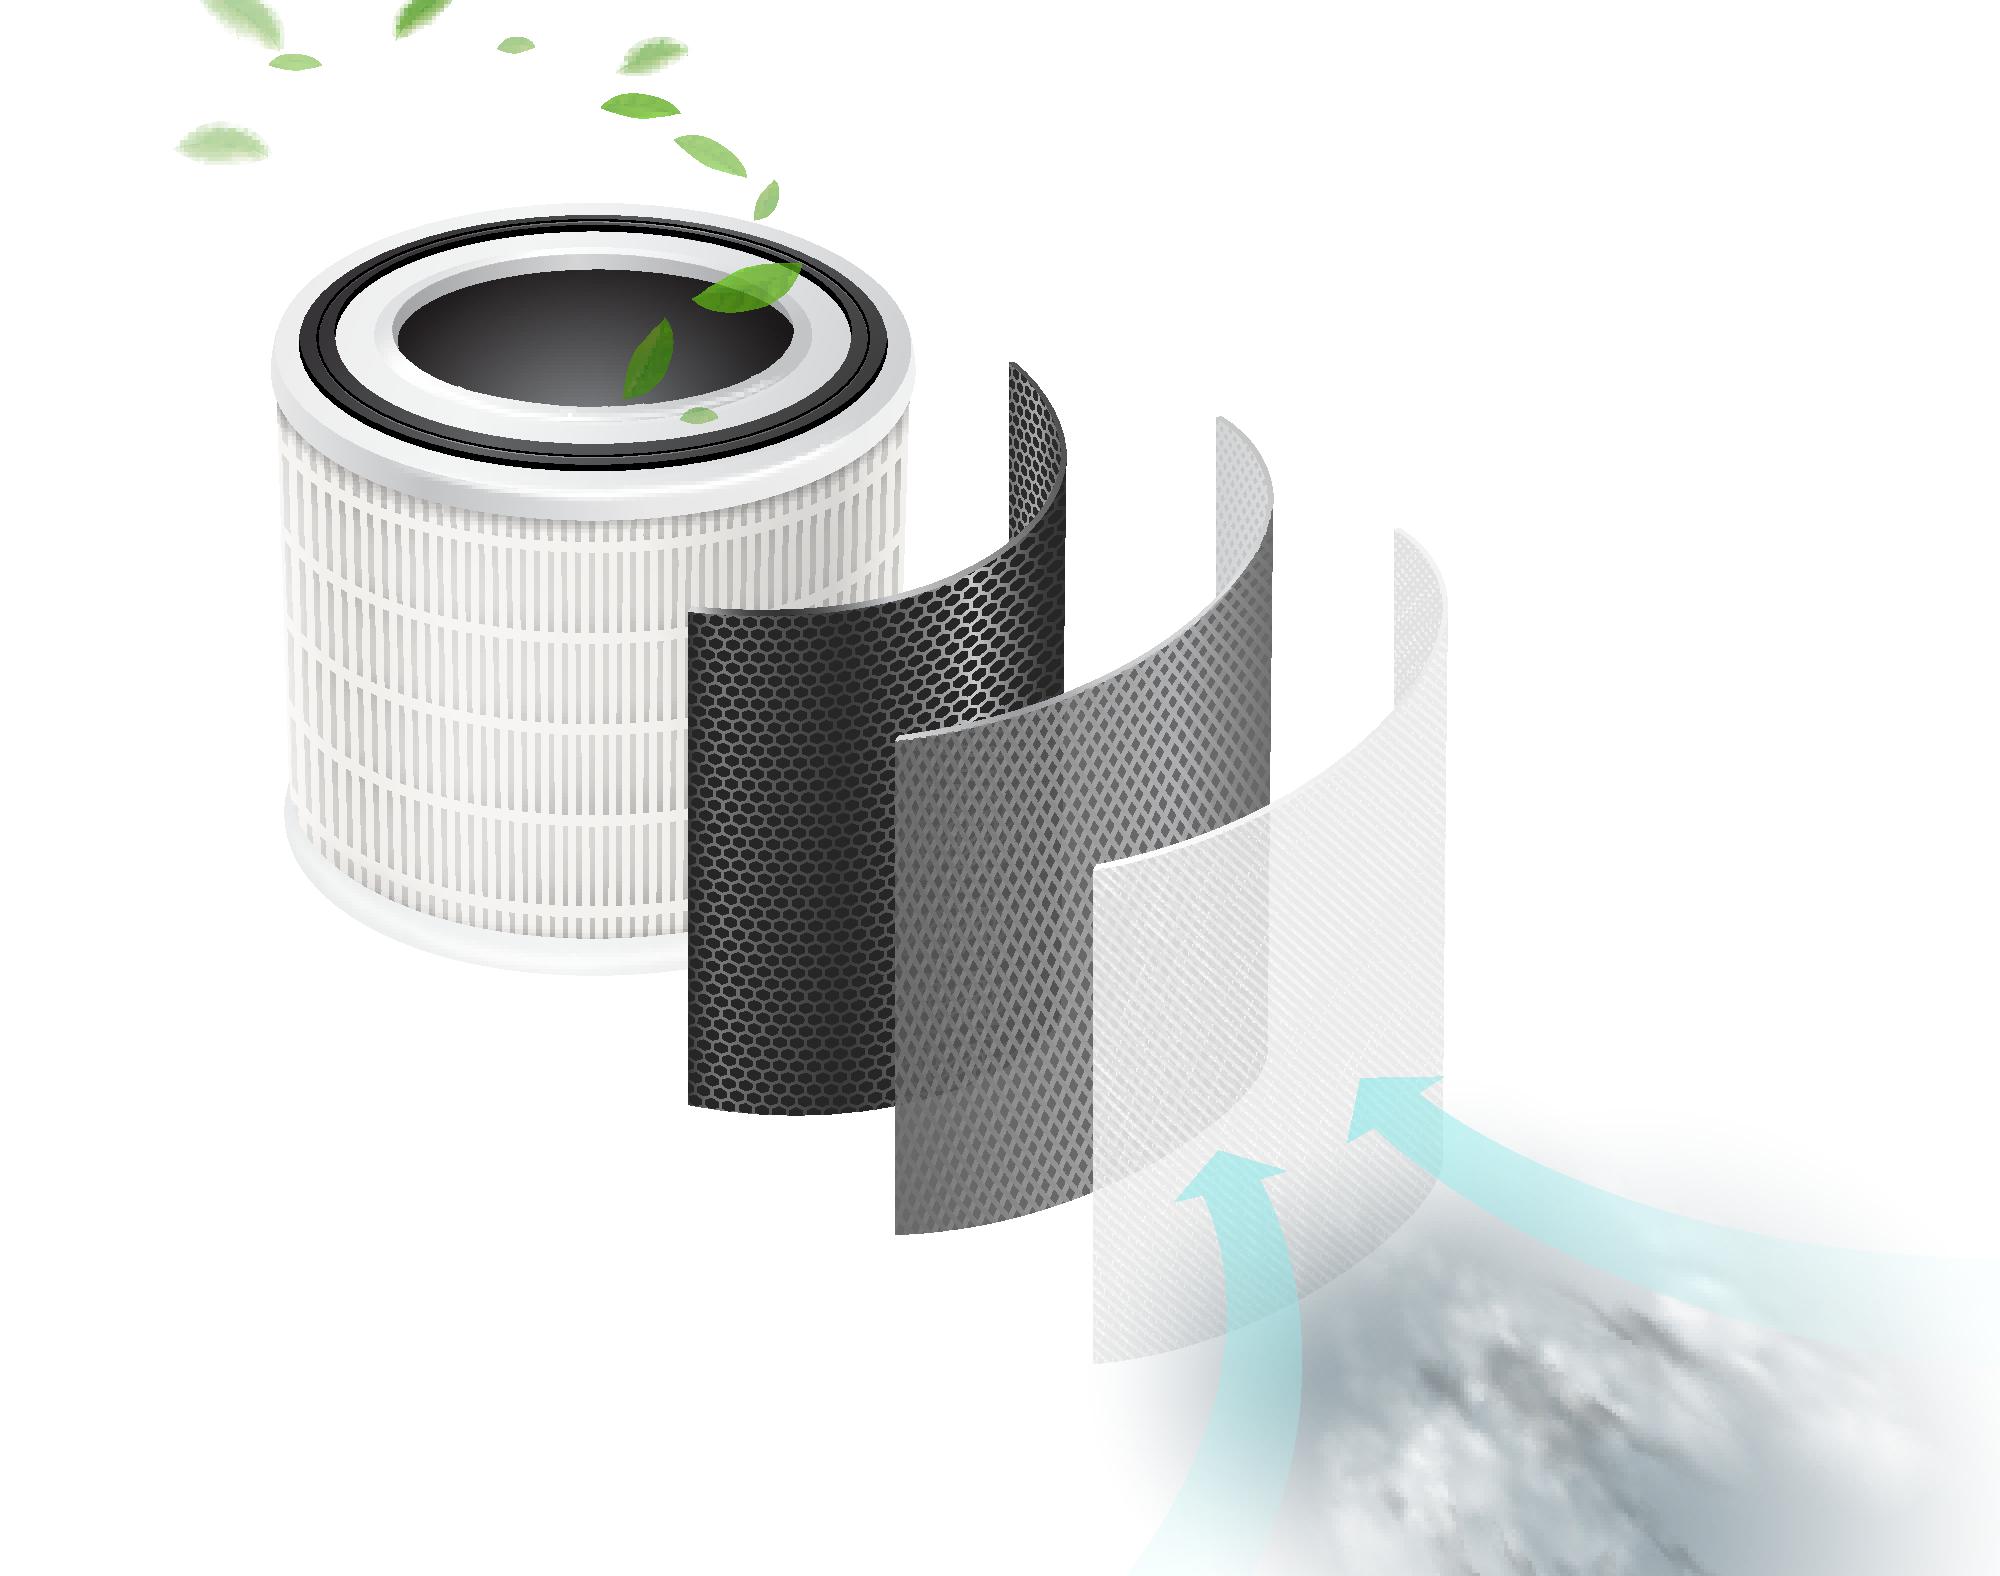 Čističky vzduchu jsou vybavené řadou filtrů. Dokážou vaši místnost zbavit pylů, prachu, kouře i zápachu